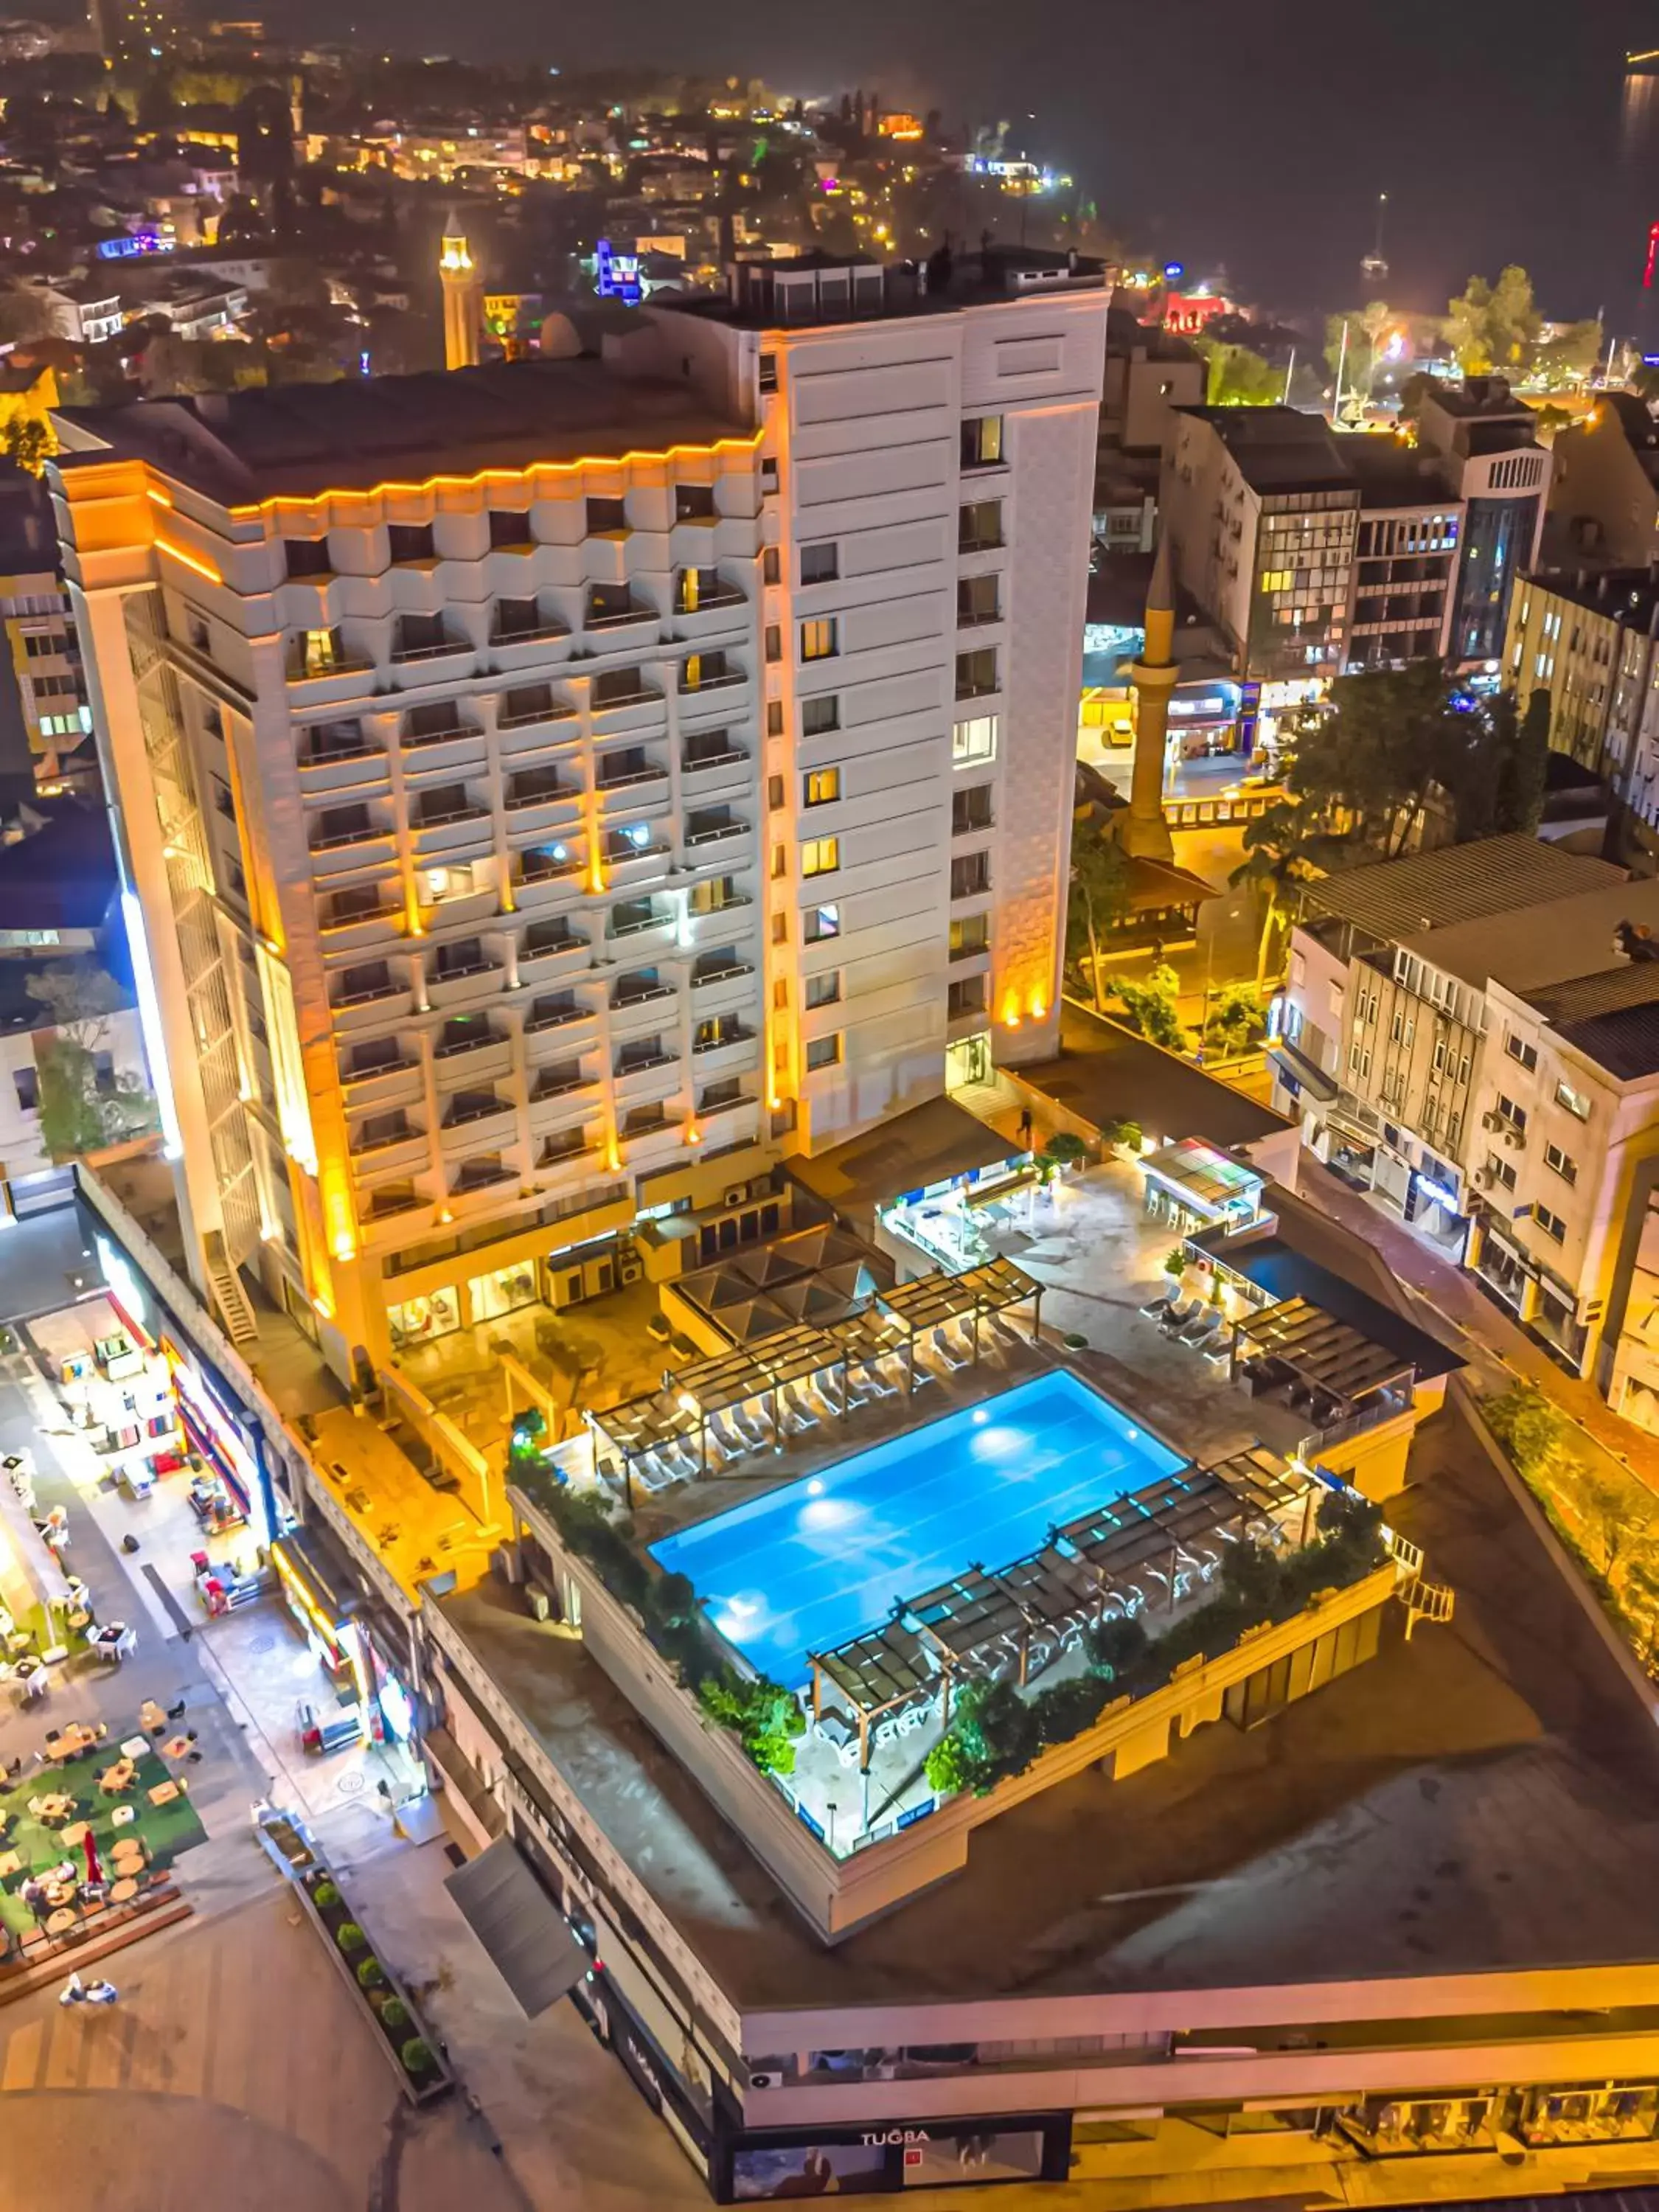 Property building, Pool View in Best Western Plus Khan Hotel